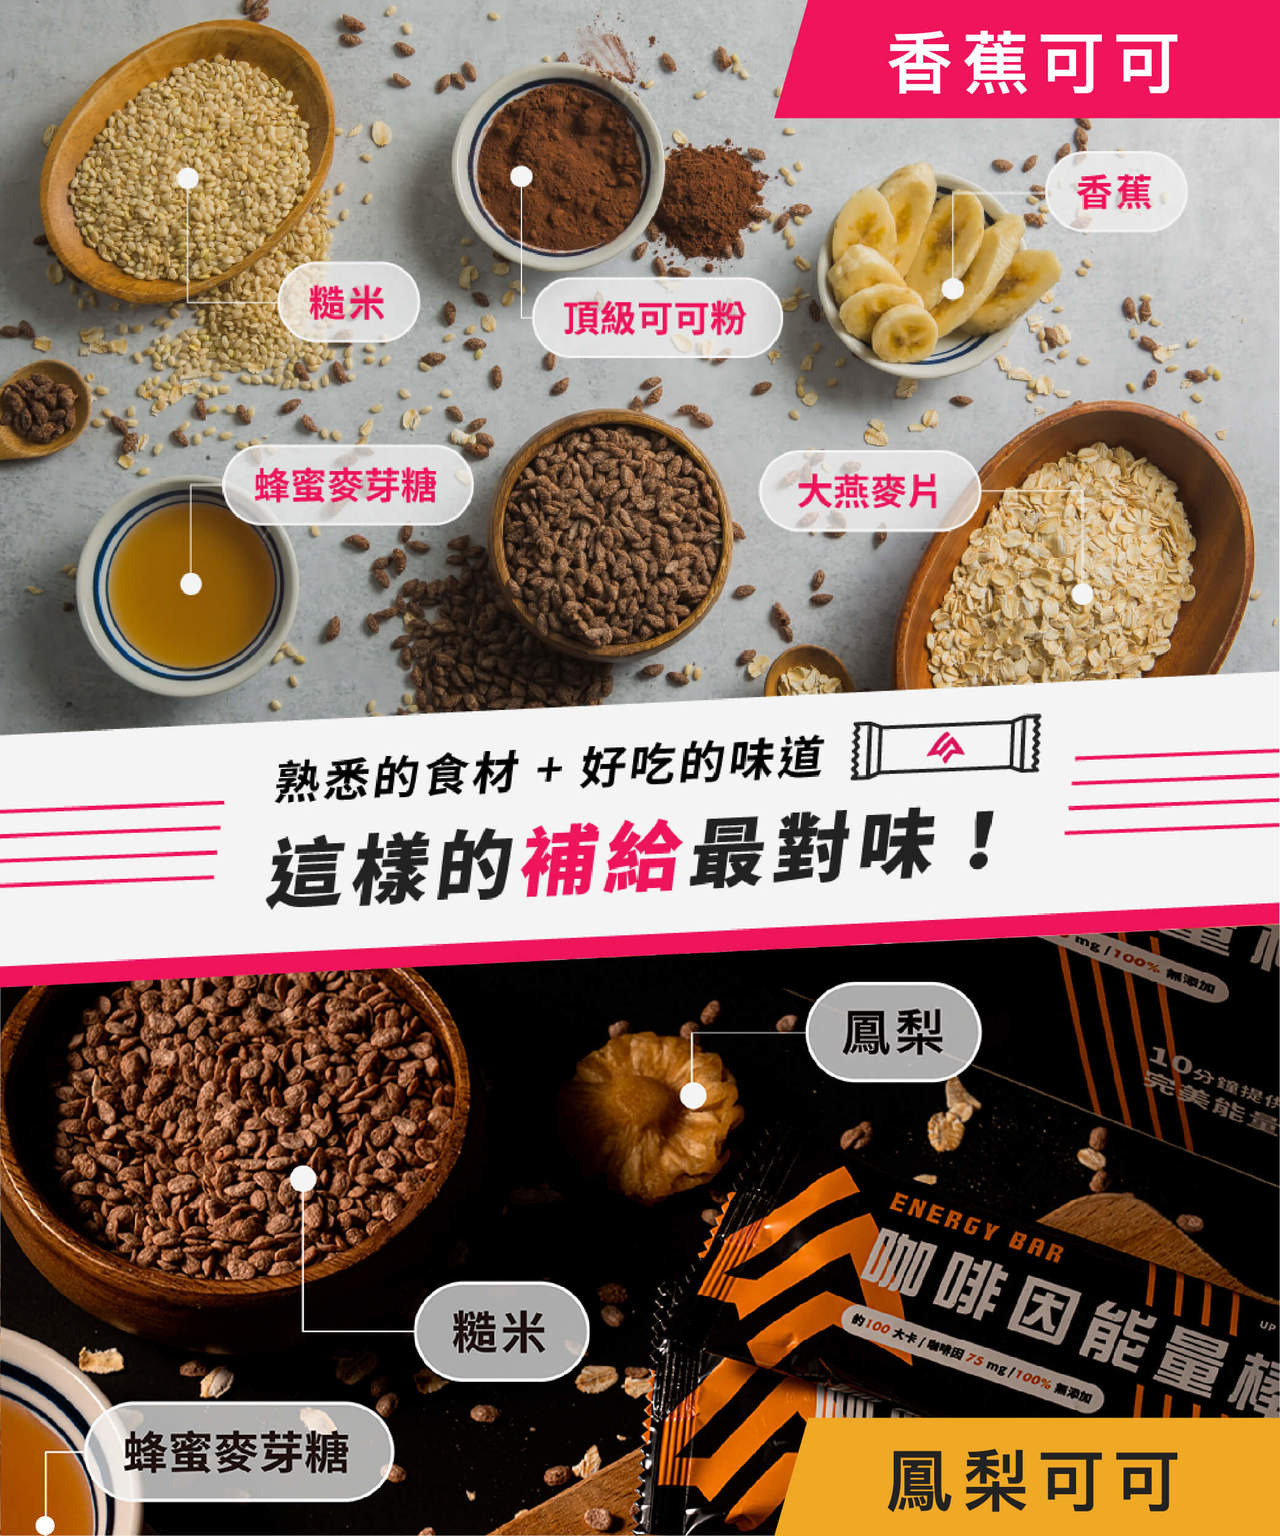 UP咖啡因能量棒 使用可可粉 大燕麥片 香蕉 蜂蜜麥芽糖 糙米 等熟悉的食材